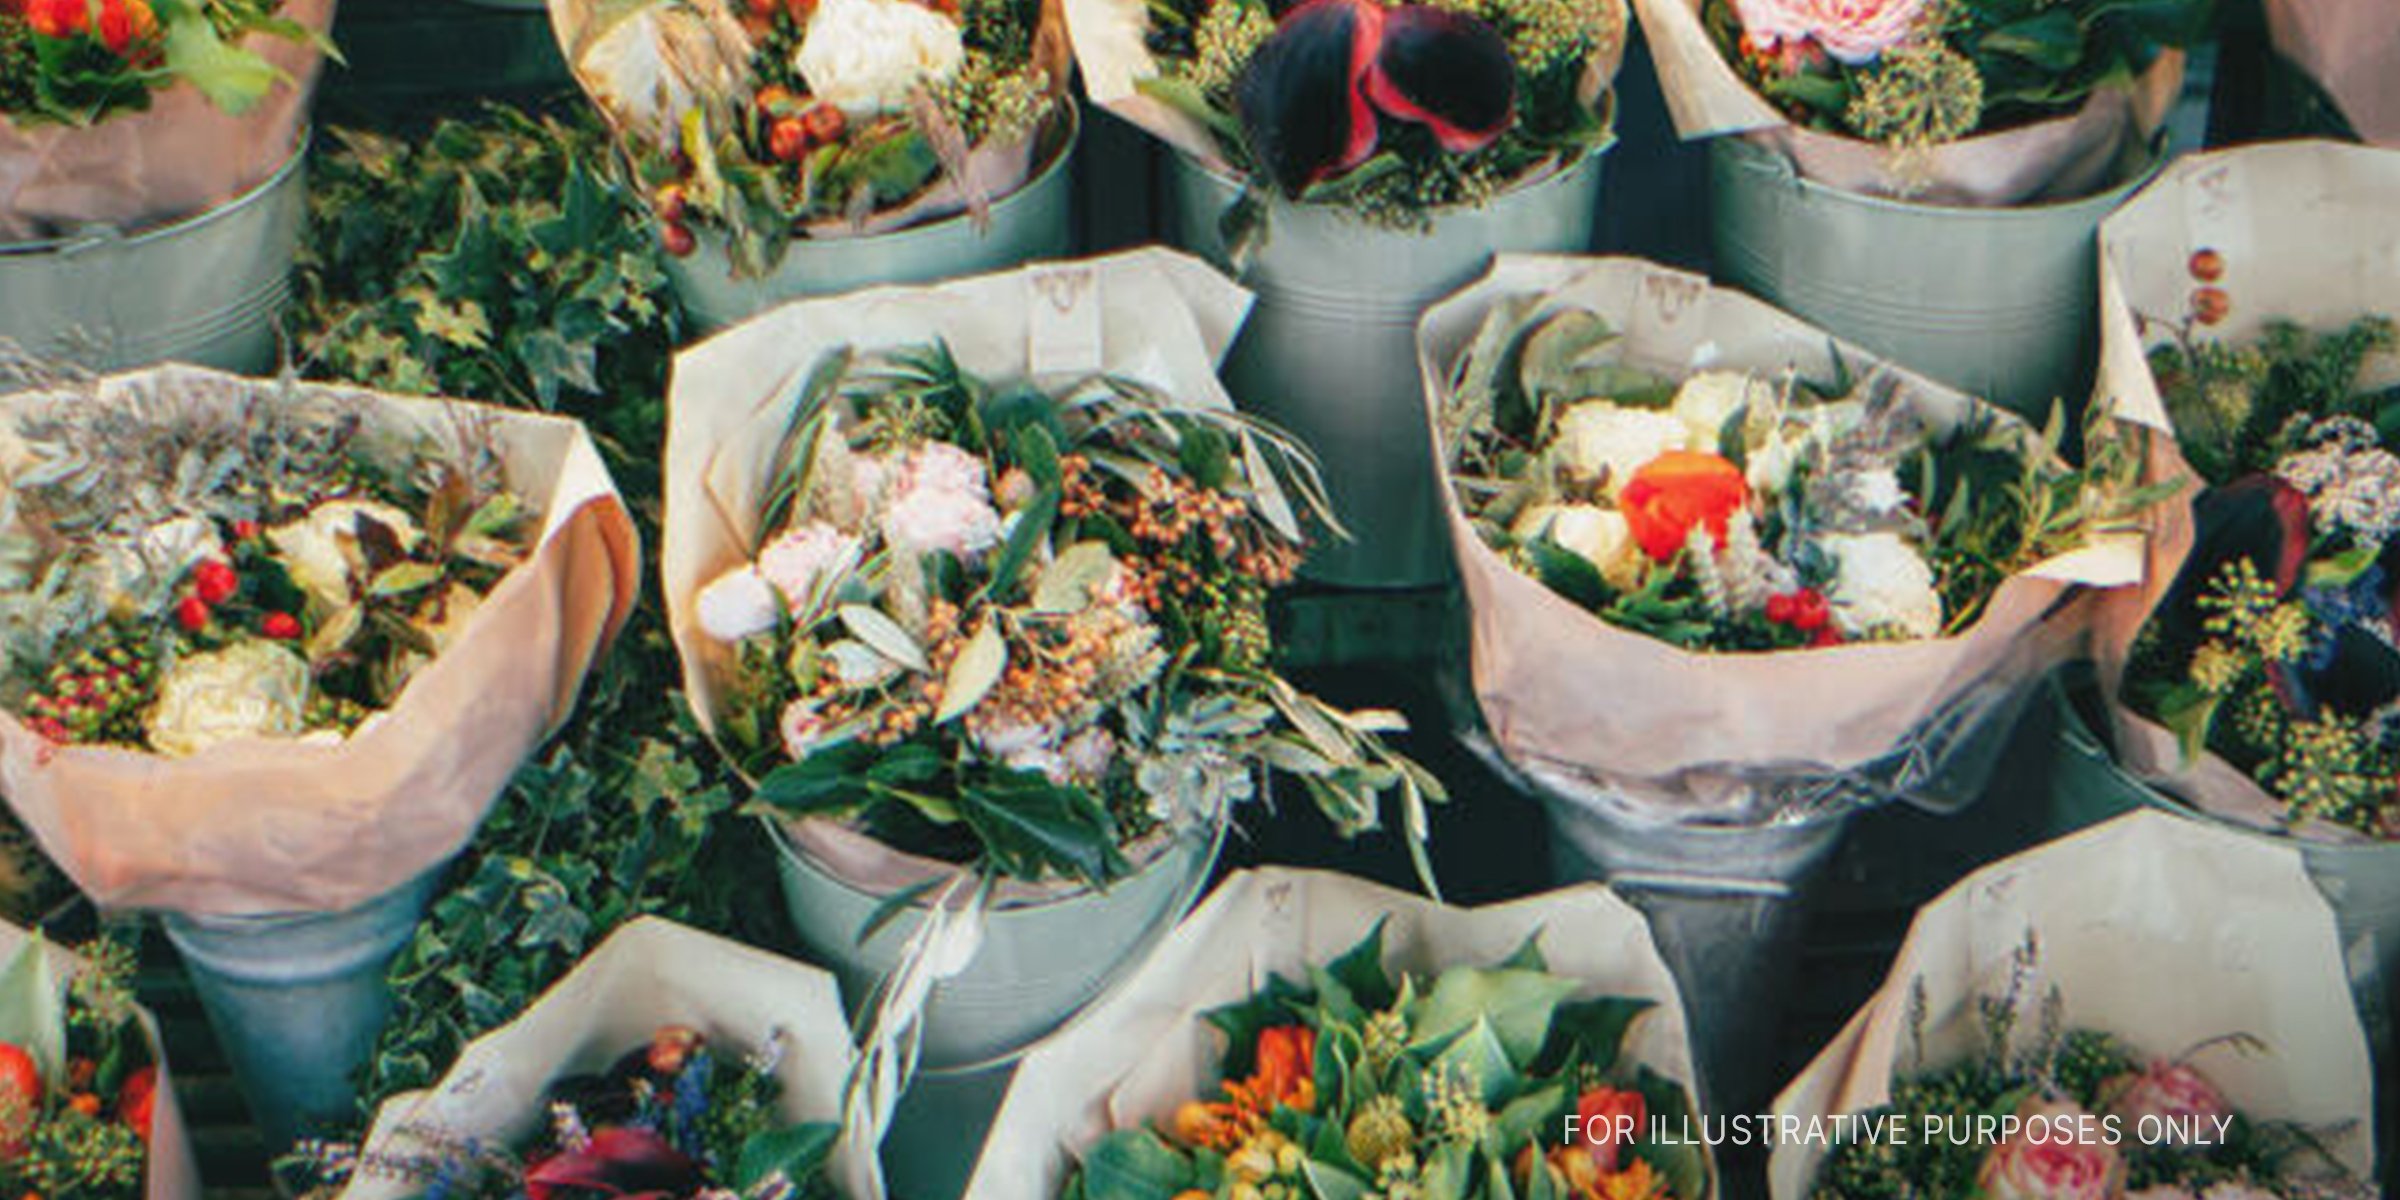 Mehrere Blumensträuße. | Quelle: Shutterstock